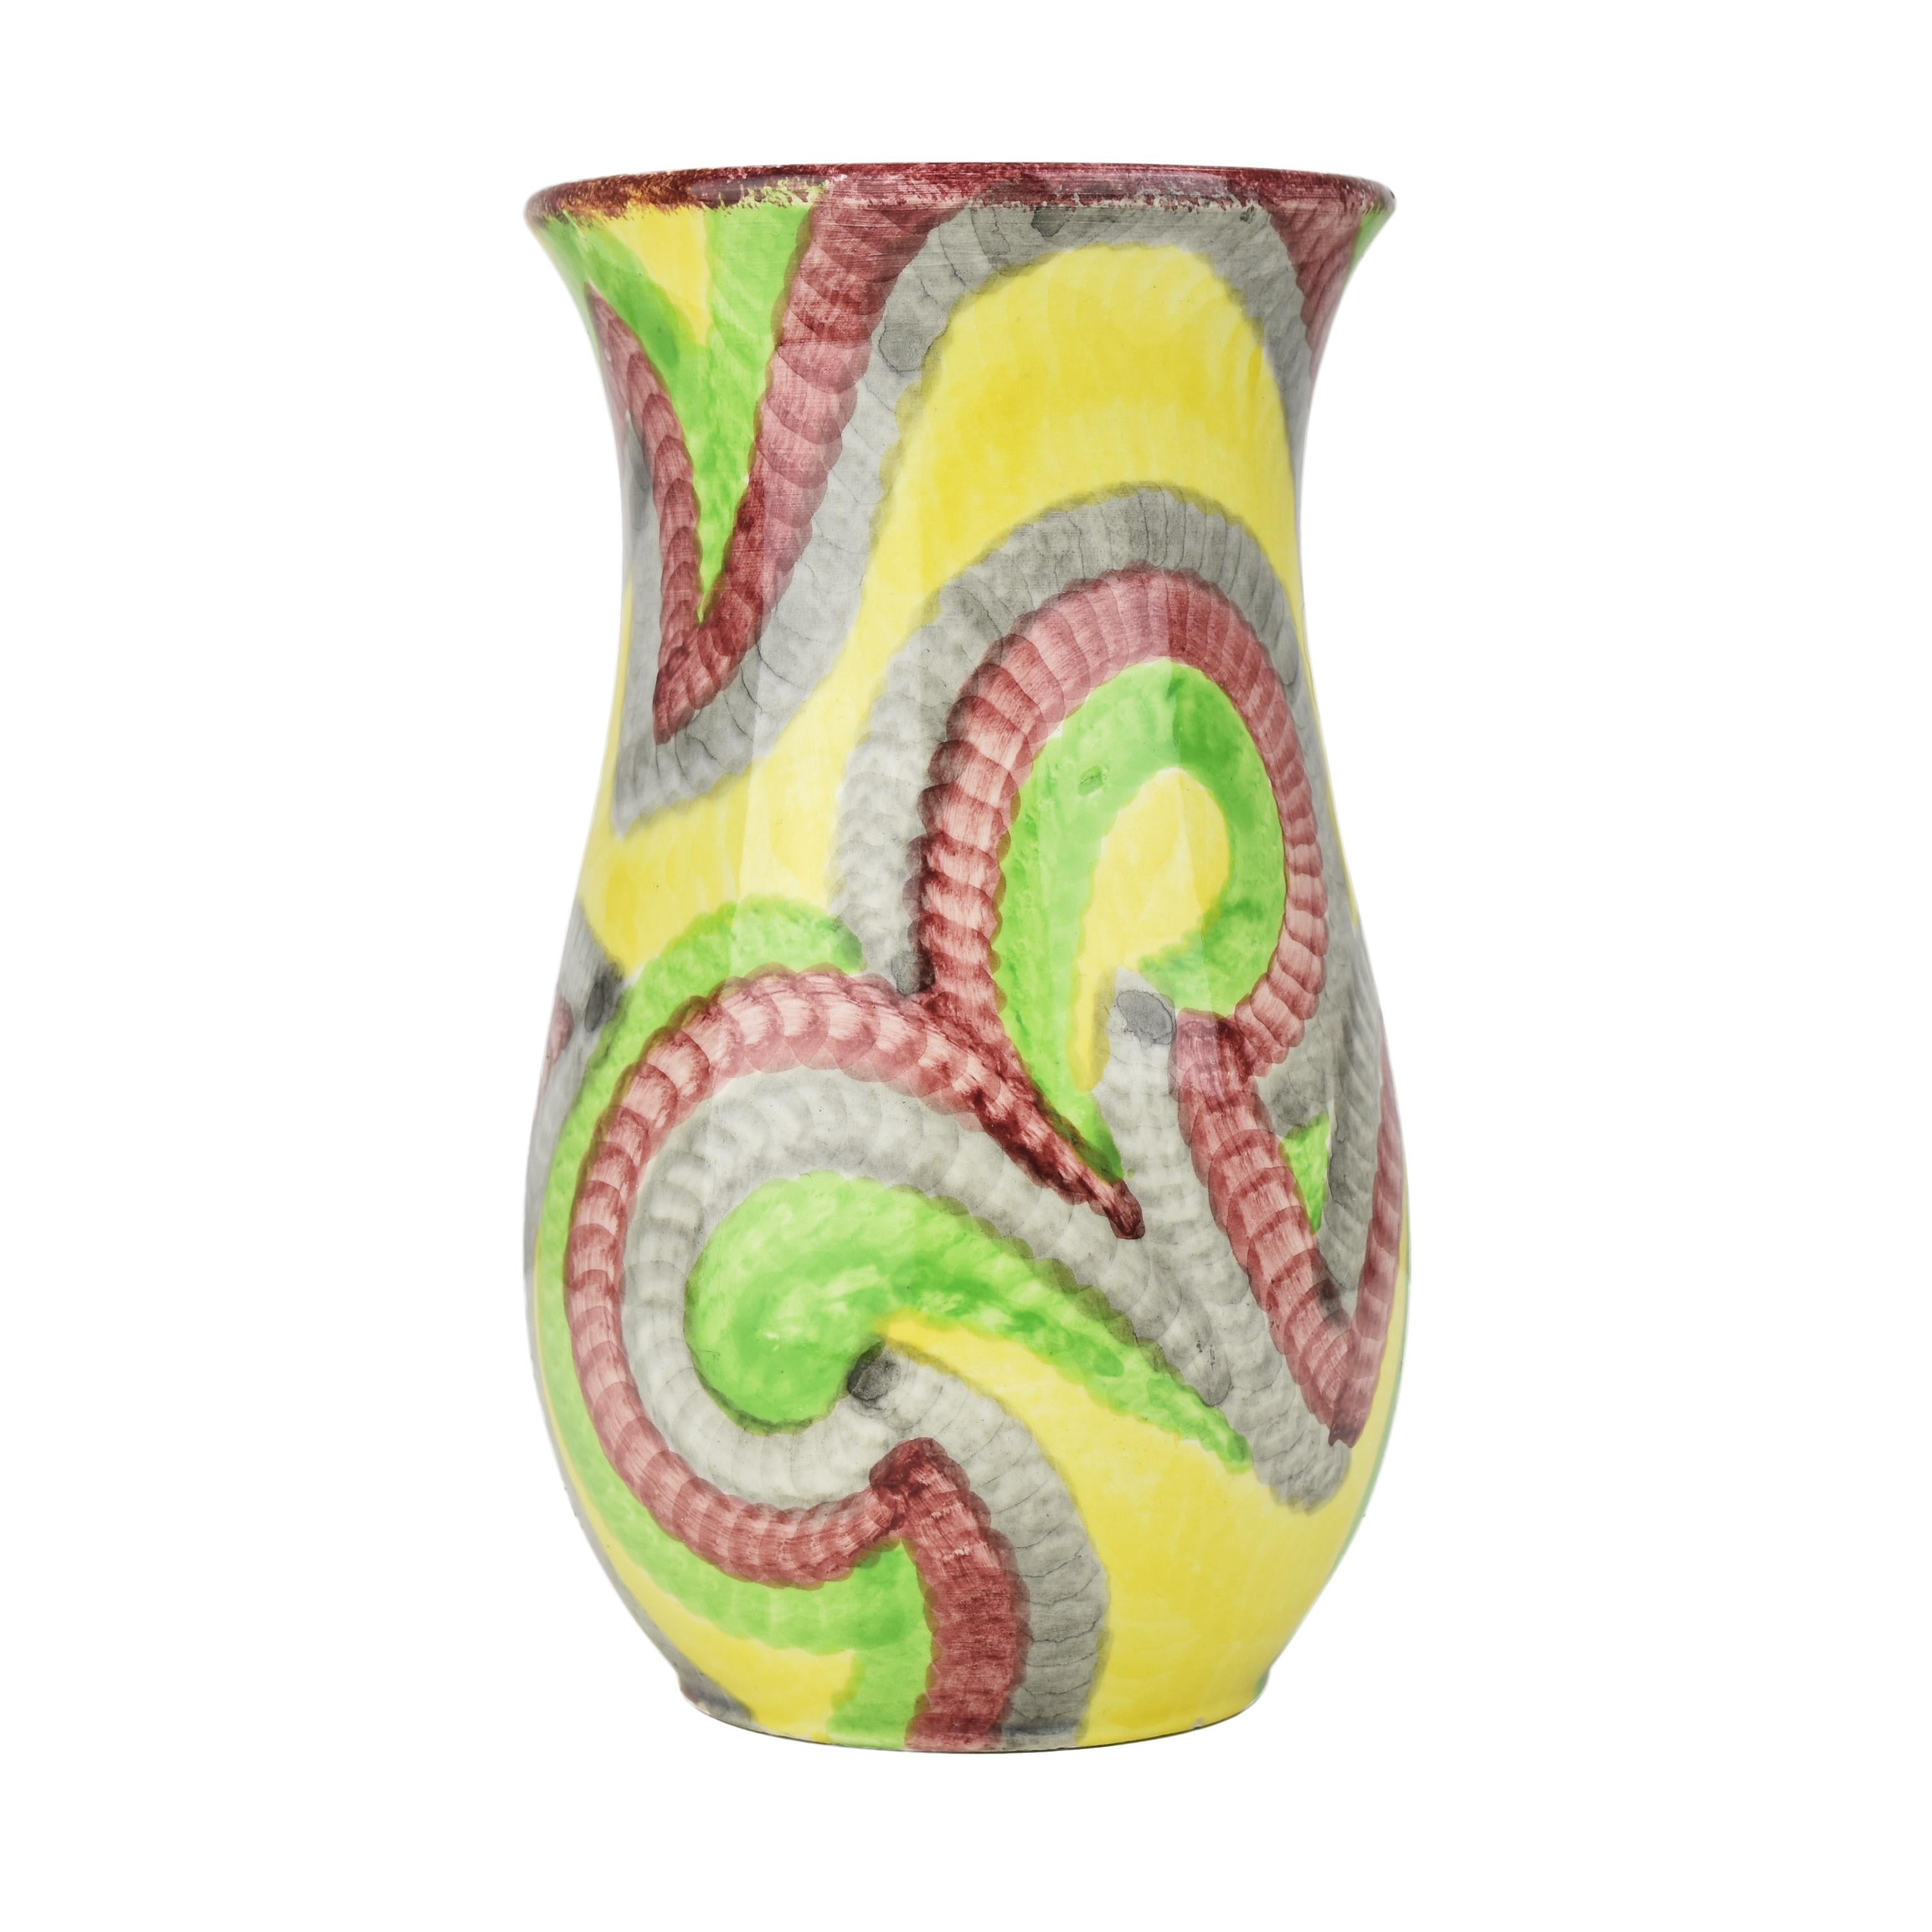 Die Schramberger Eva Zeisel Gobelin Art Deco Bauhaus Vase ist ein einzigartiges und sehr begehrtes Stück Keramikkunst. Diese Vase wurde im frühen 20. Jahrhundert während der Art-Déco-Periode geschaffen, die durch kühne geometrische Formen,